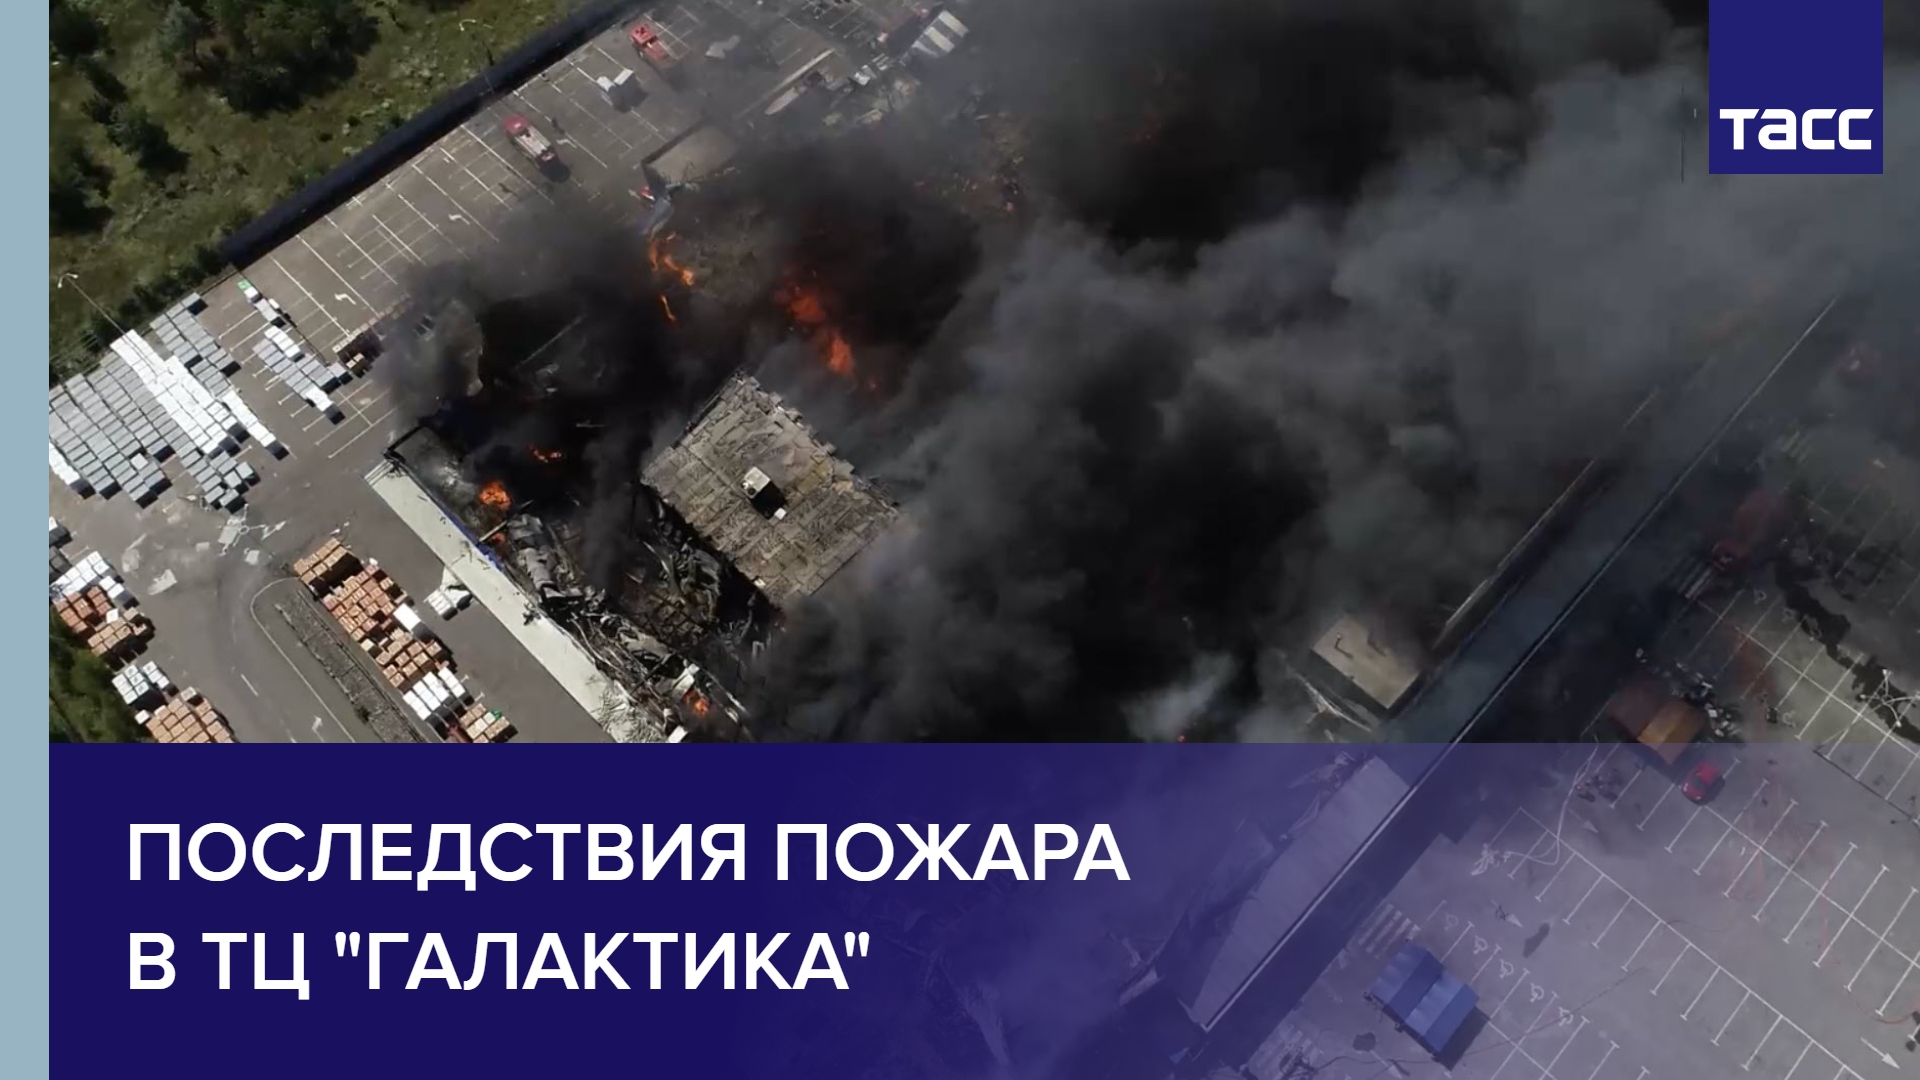 Последствия пожара в ТЦ "Галактика" после обстрела со стороны ВСУ в Донецке #shorts